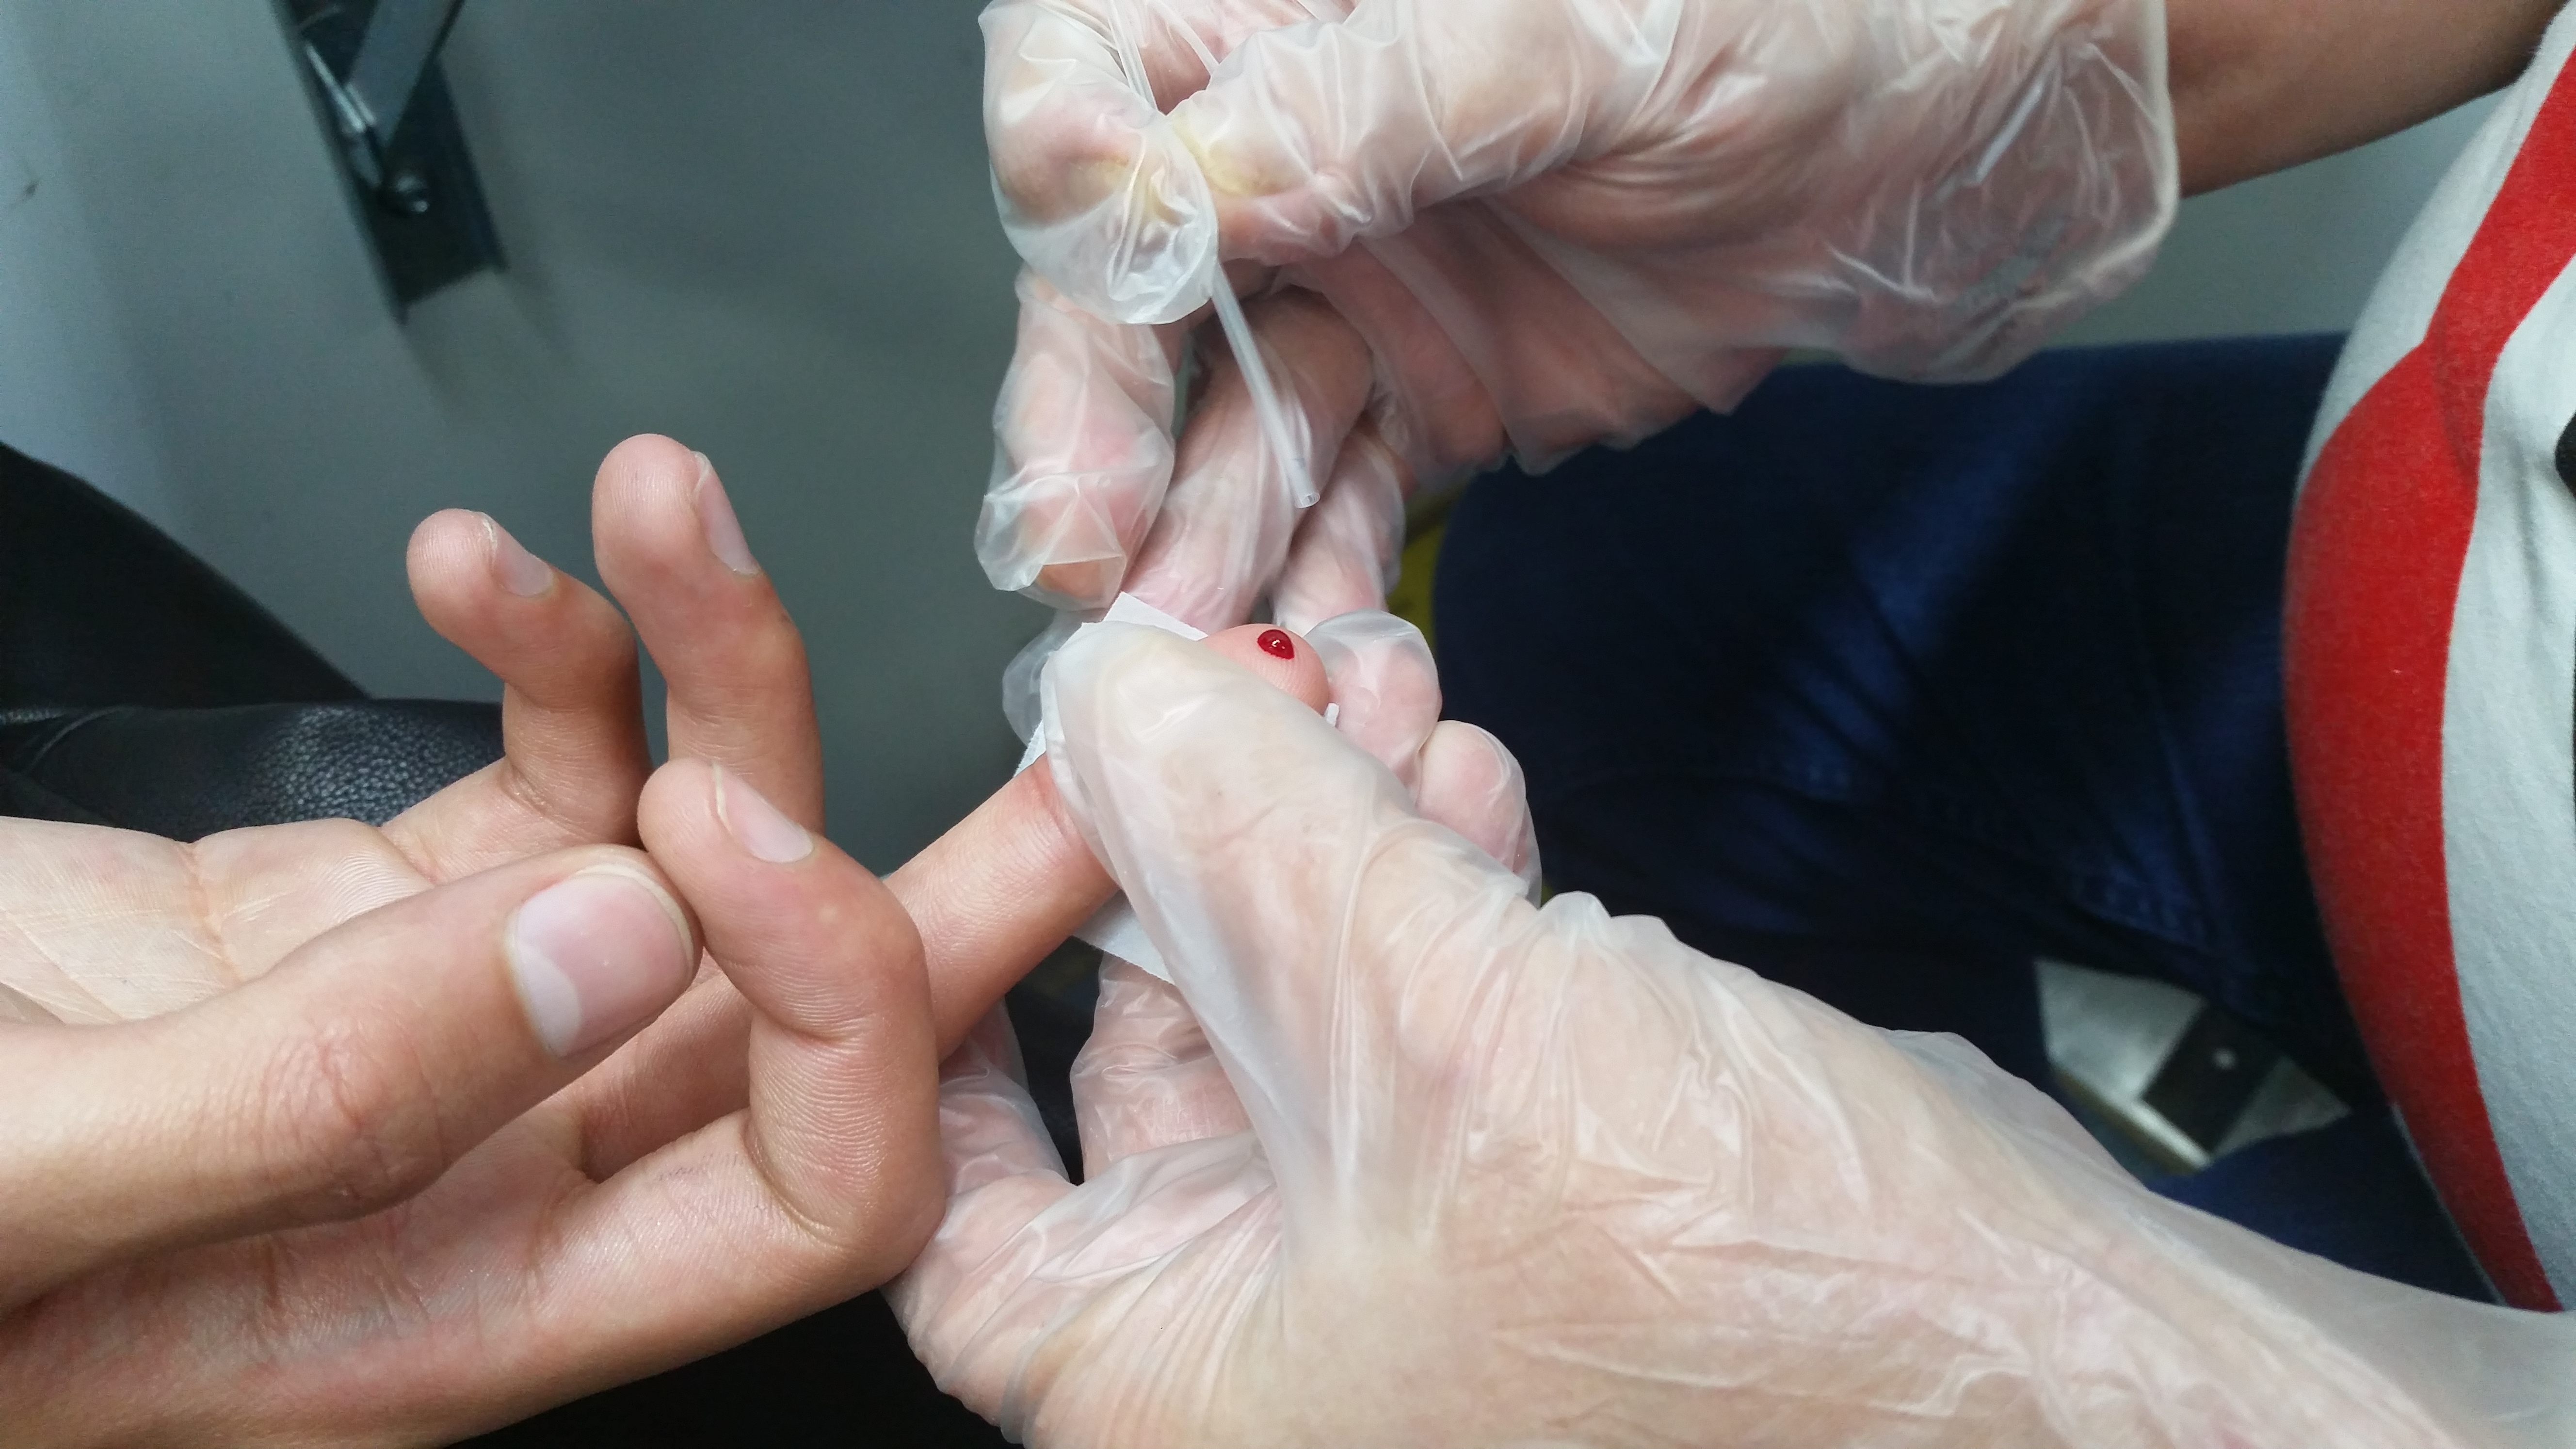 Foto que mostra a coleta de sangue de um dedo com um bastão transparente. A coleta é feita por uma mão com luva transparente, ao centro da imagem.